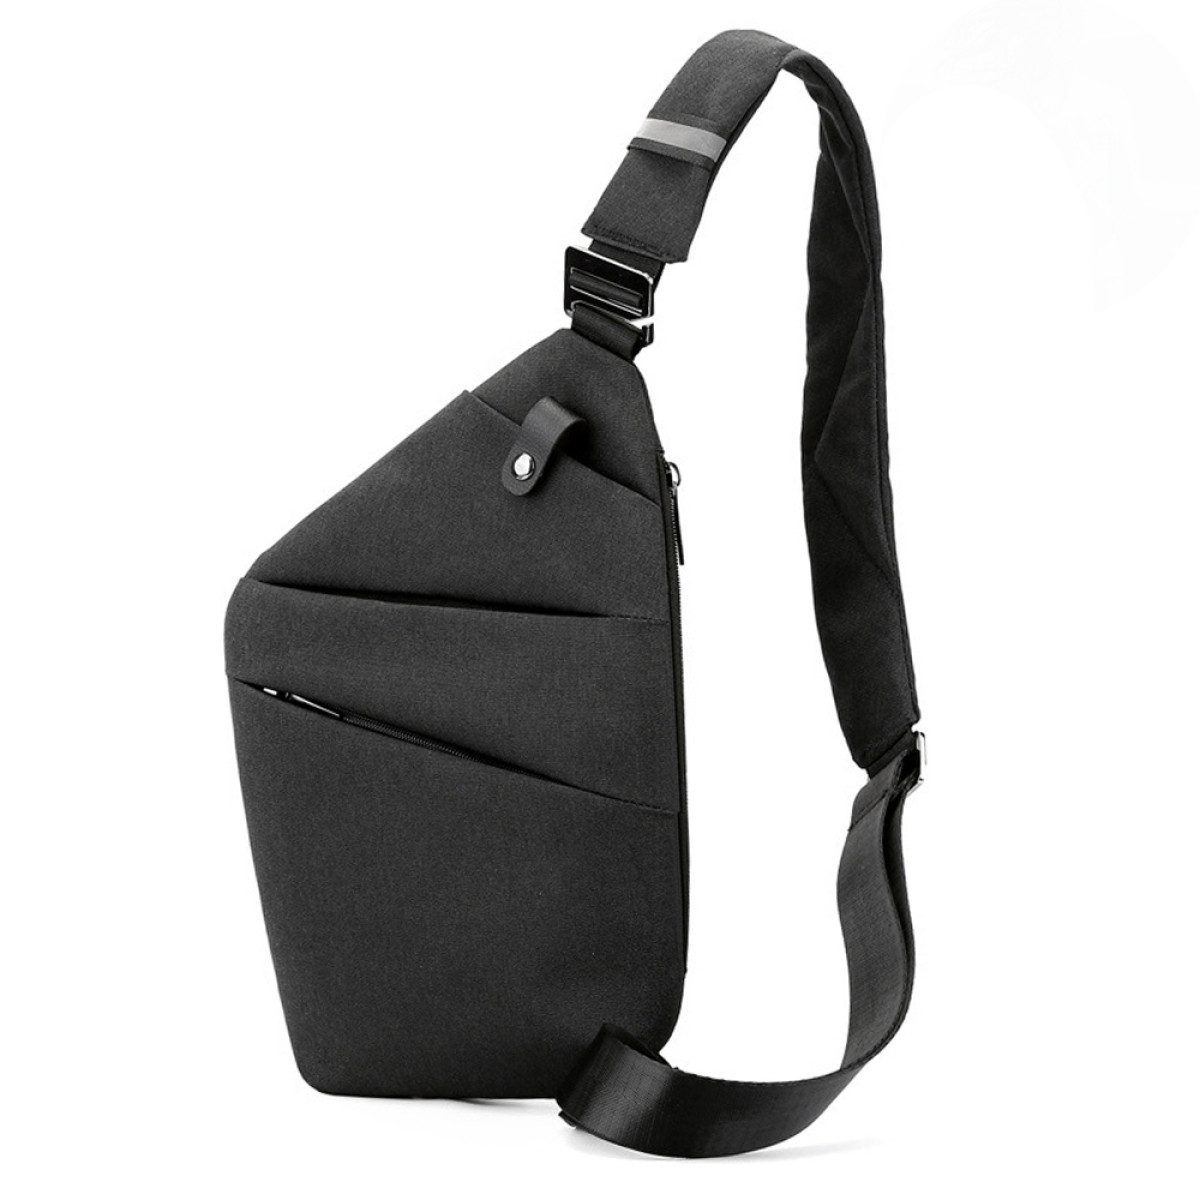 Rnemitery Schultertasche Umhängetasche Anti-Diebstahl Brusttasche Herren Sling Crossbody Pack (Hält Becher/iPad mini/ Regenschirm usw), im praktischen Design, mit geräumigem Hauptfach